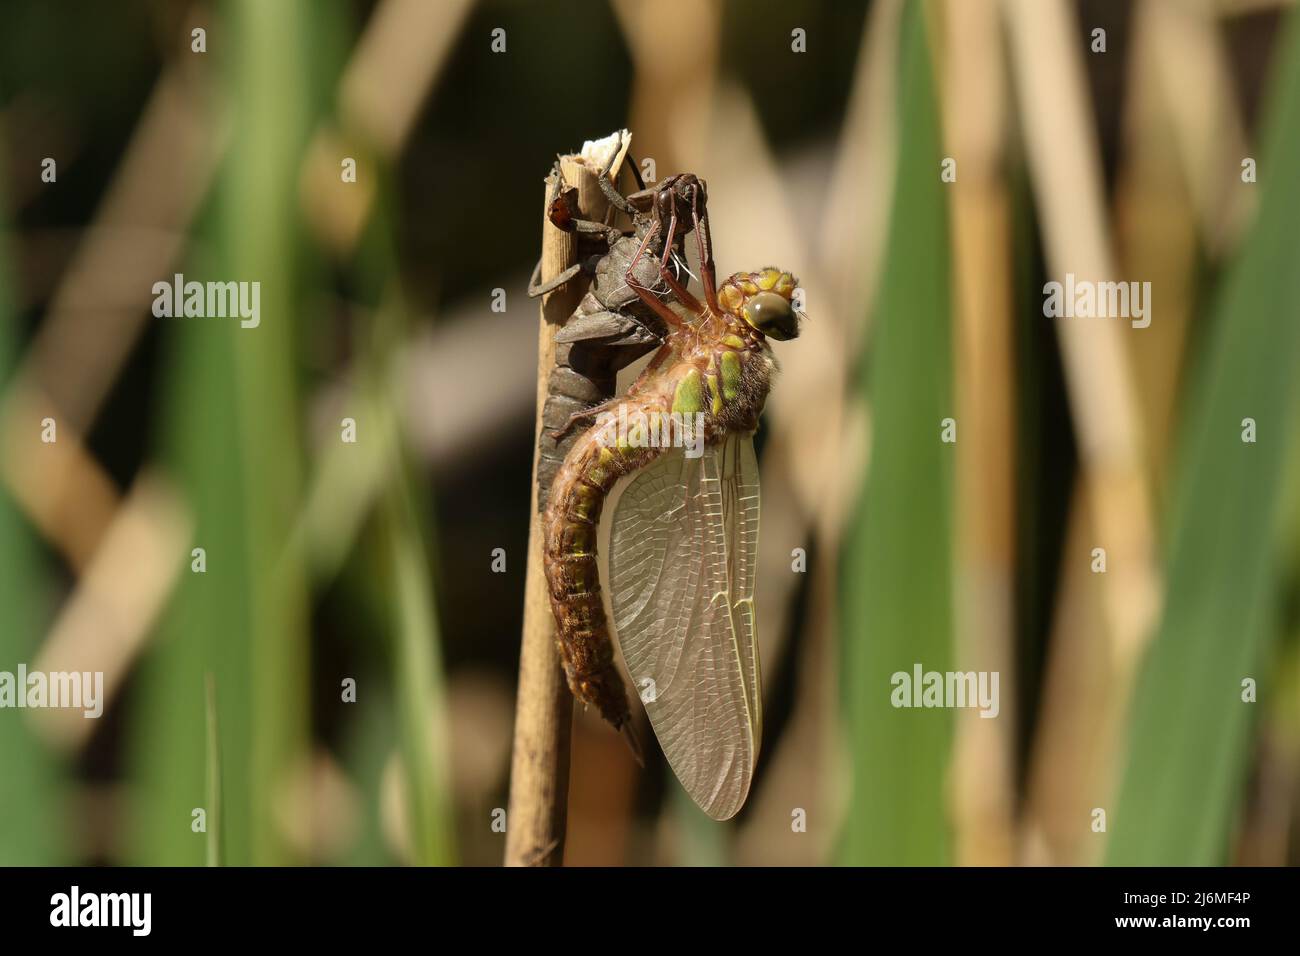 Una libélula peluda, Brachytron pratense, sosteniendo sobre su exuda, el caso larval que se acaba de salir de en una caña en el banco de un estanque. Foto de stock